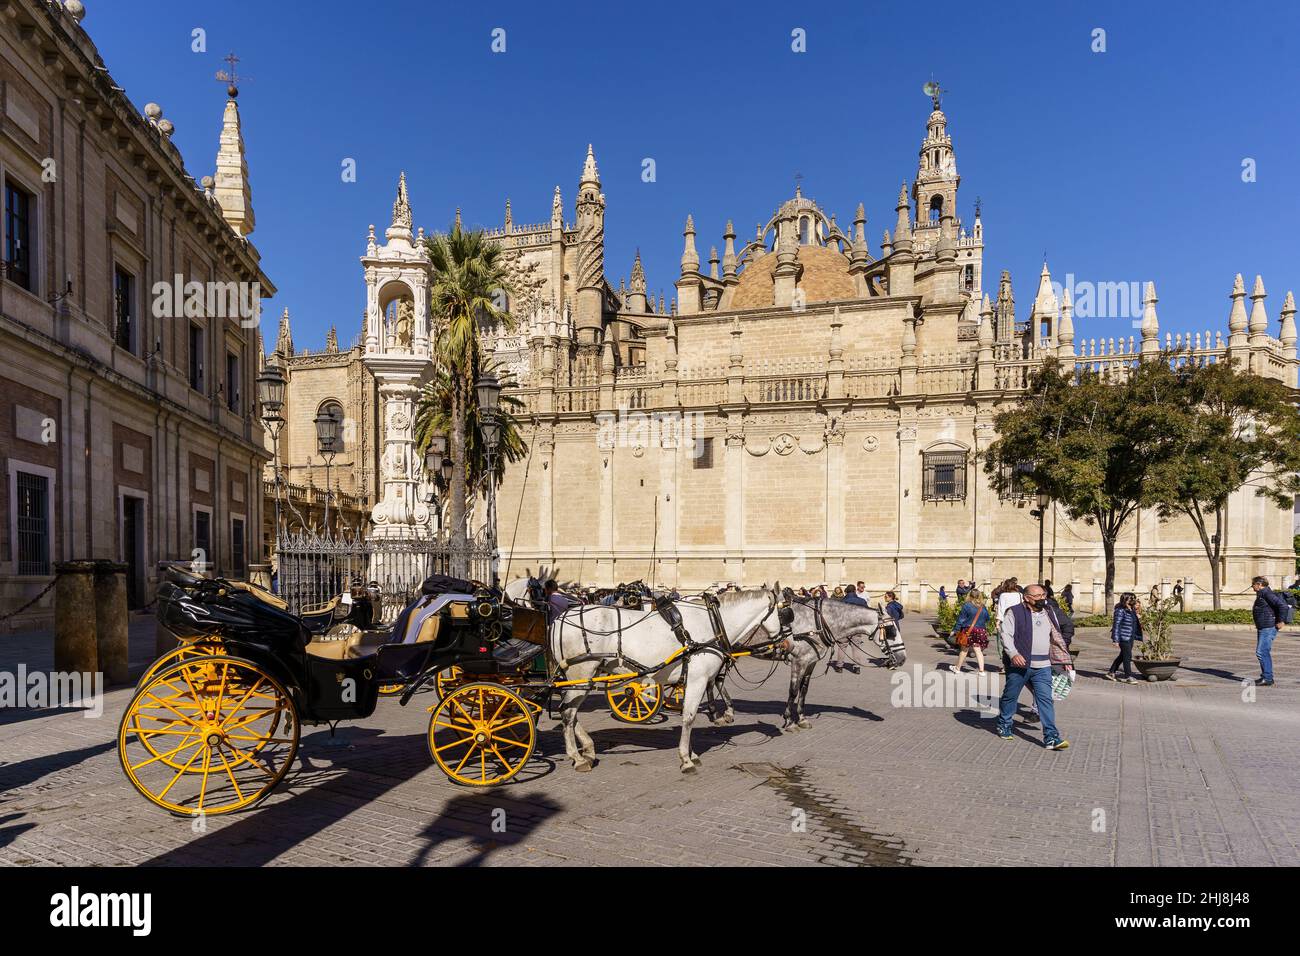 Sevilla, Spanien - 08 2021. November: In der Kathedrale von Sevilla im historischen Zentrum wartet an einem sonnigen Tag i eine Pferdekutsche auf Touristen Stockfoto